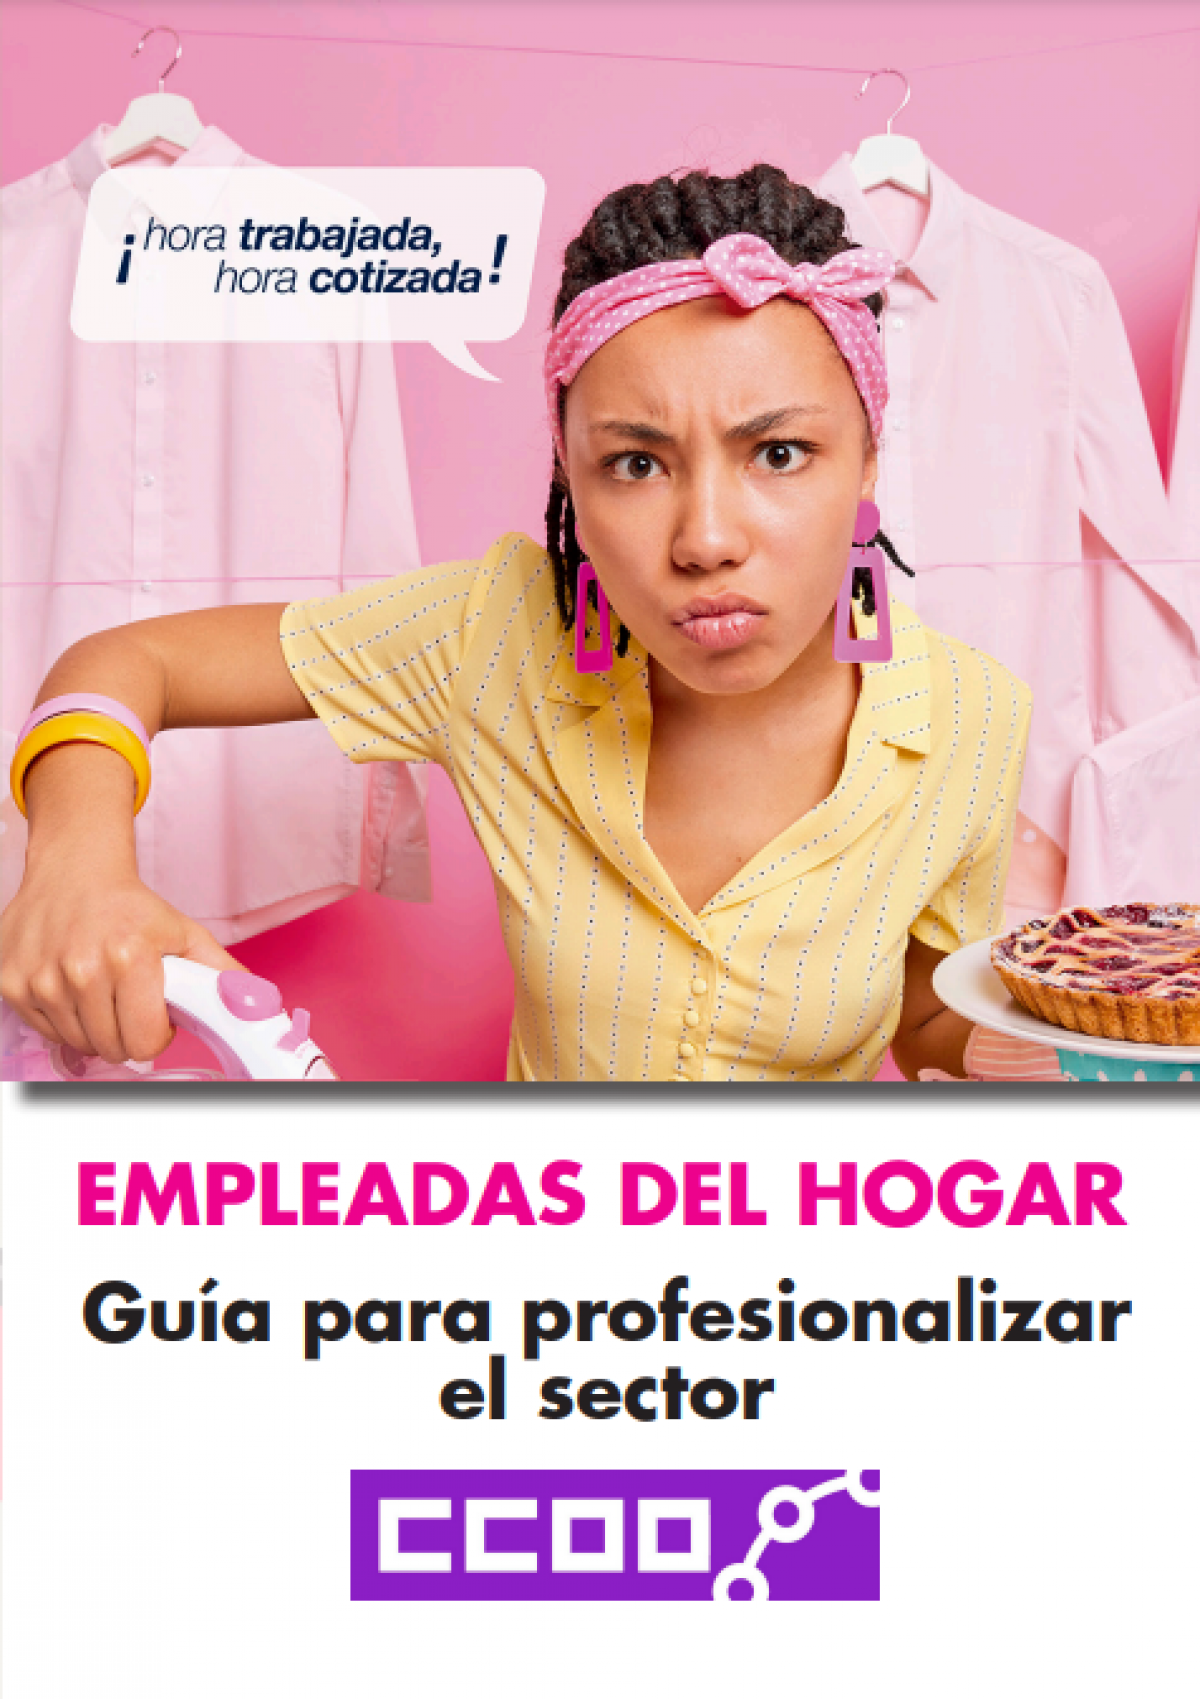 Guia para profesionalizar el sector de las empleadas del hogar.